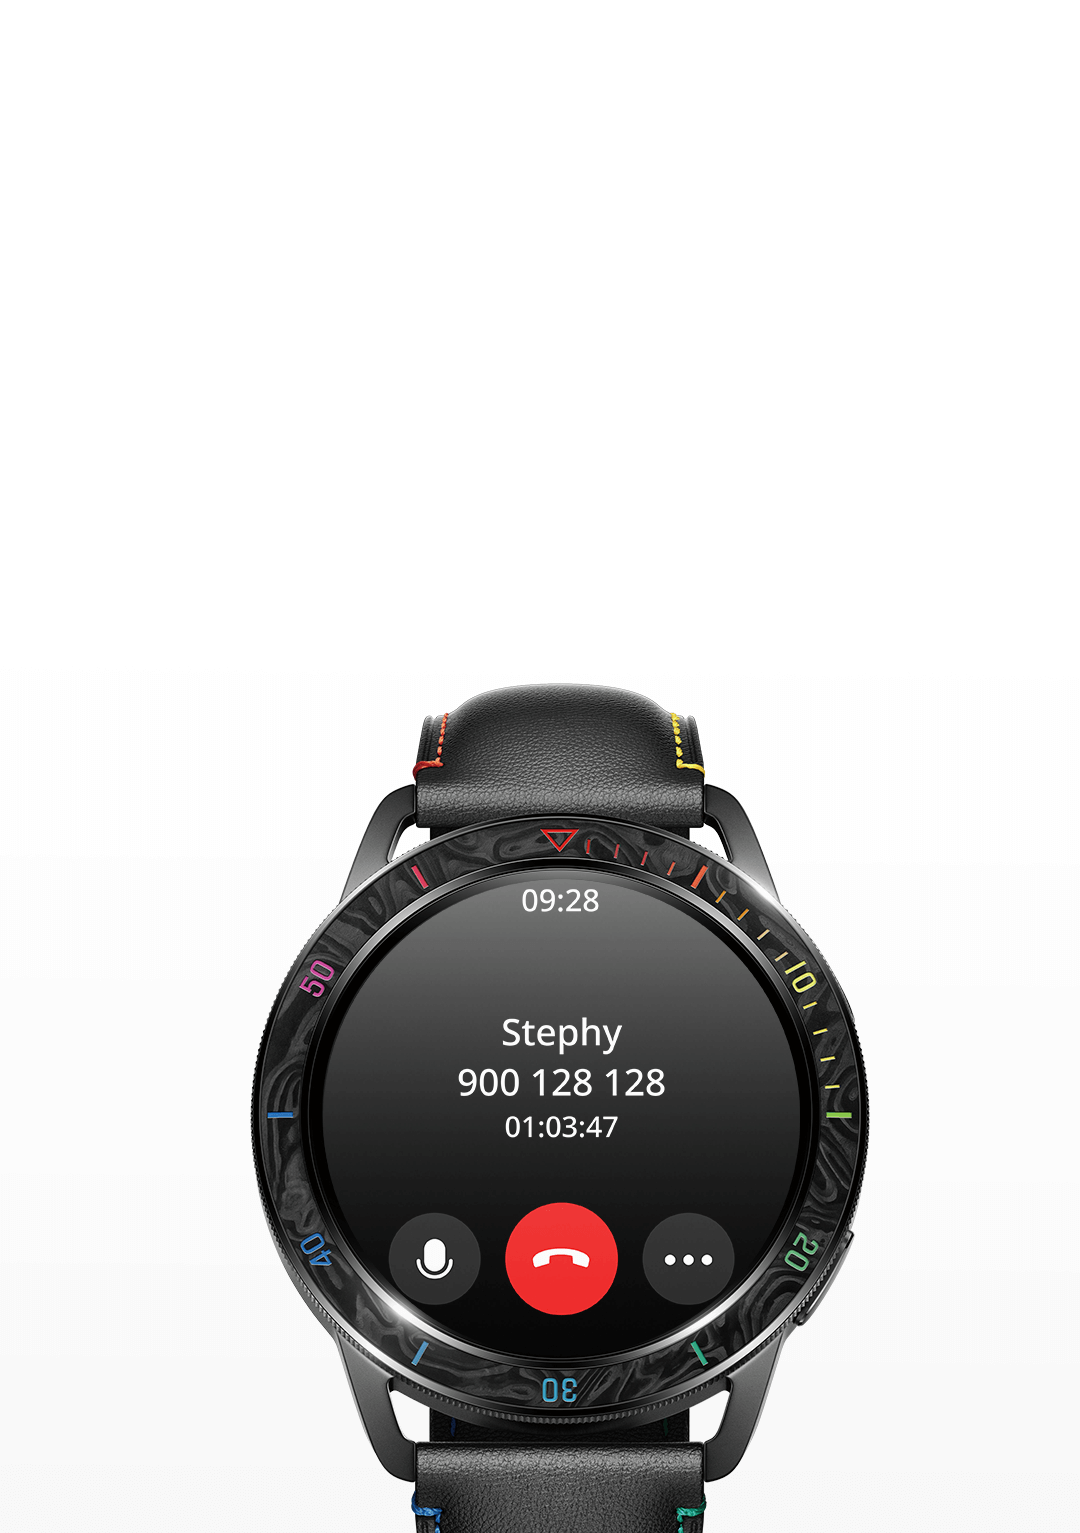 Xiaomi: Nowa wersja Watch S3 zawiera moduł GNSS i modem komórkowy